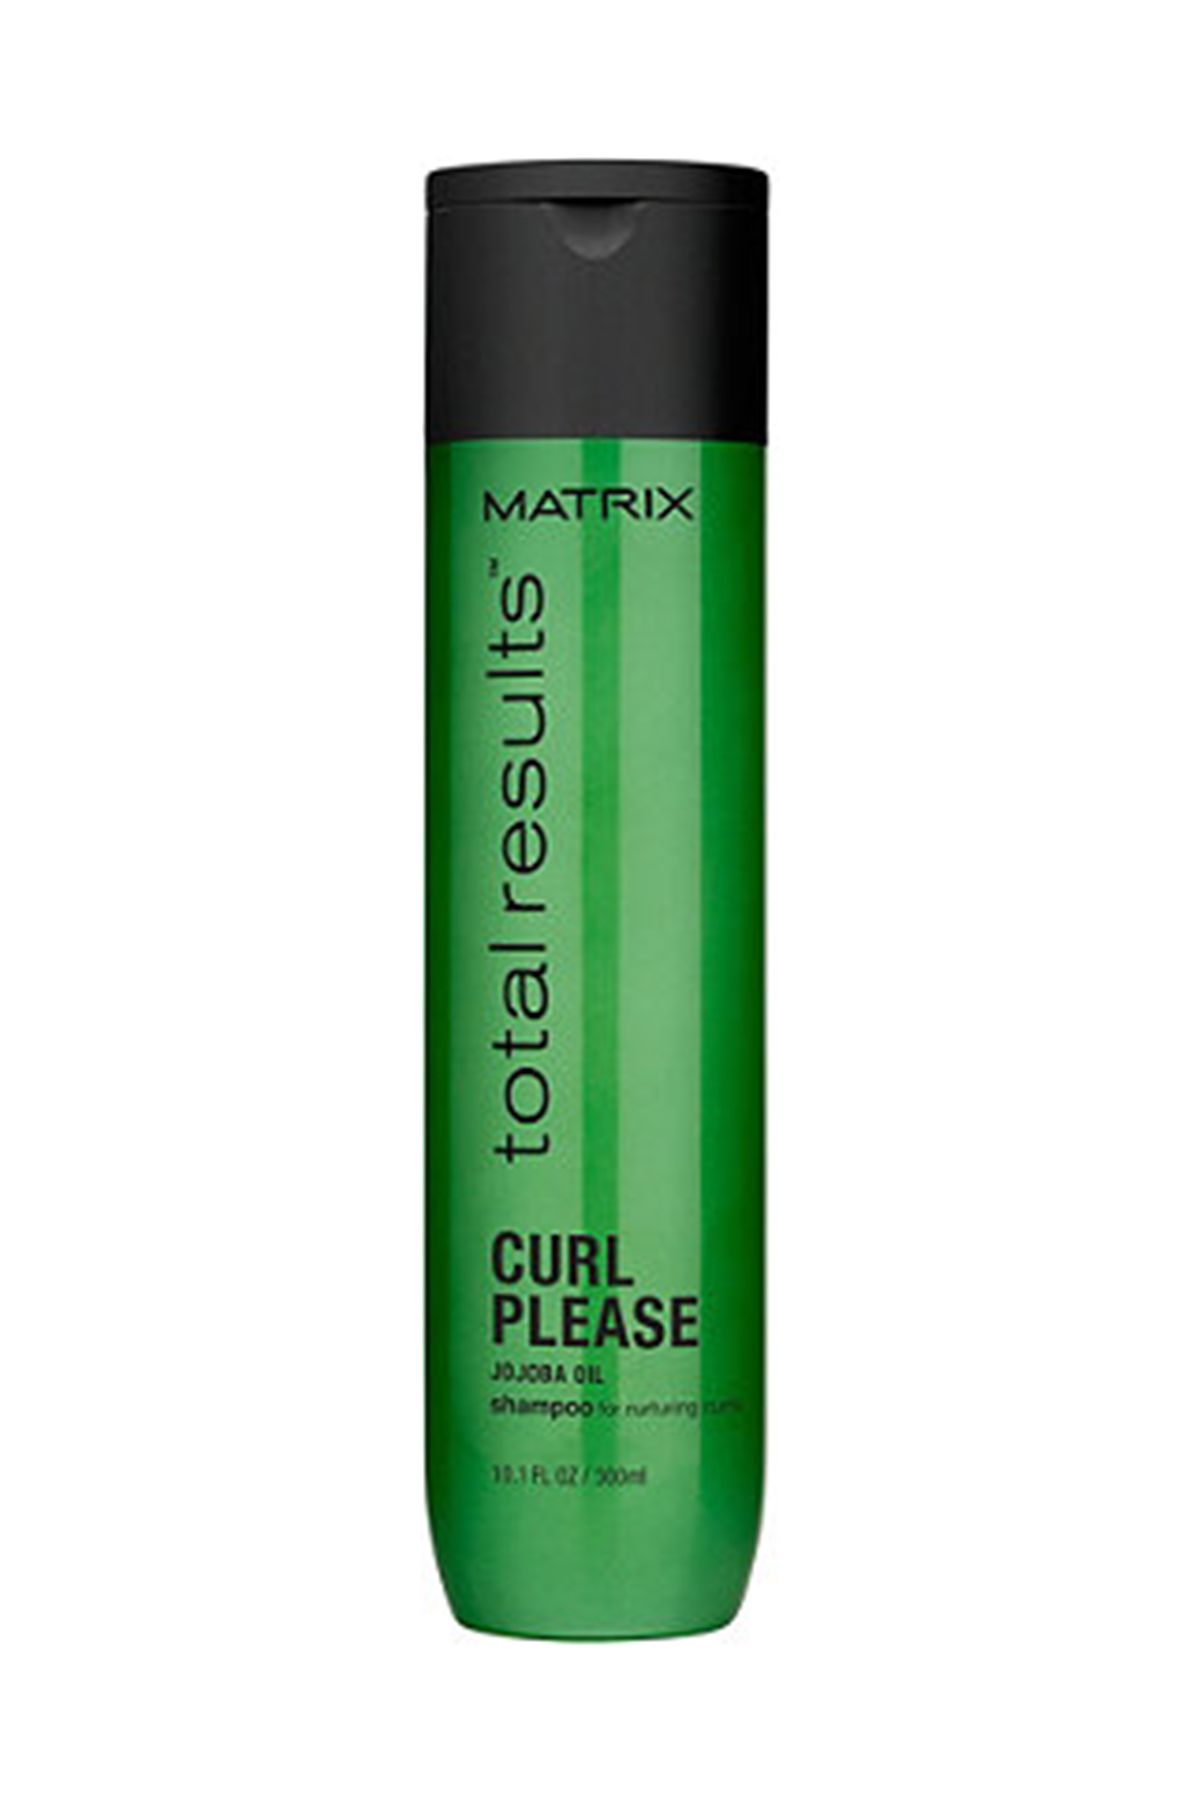 Matrix Belirgin Bukleler Saç Bakım Şampuanı - Curl Sh 300 mL 3474636351282